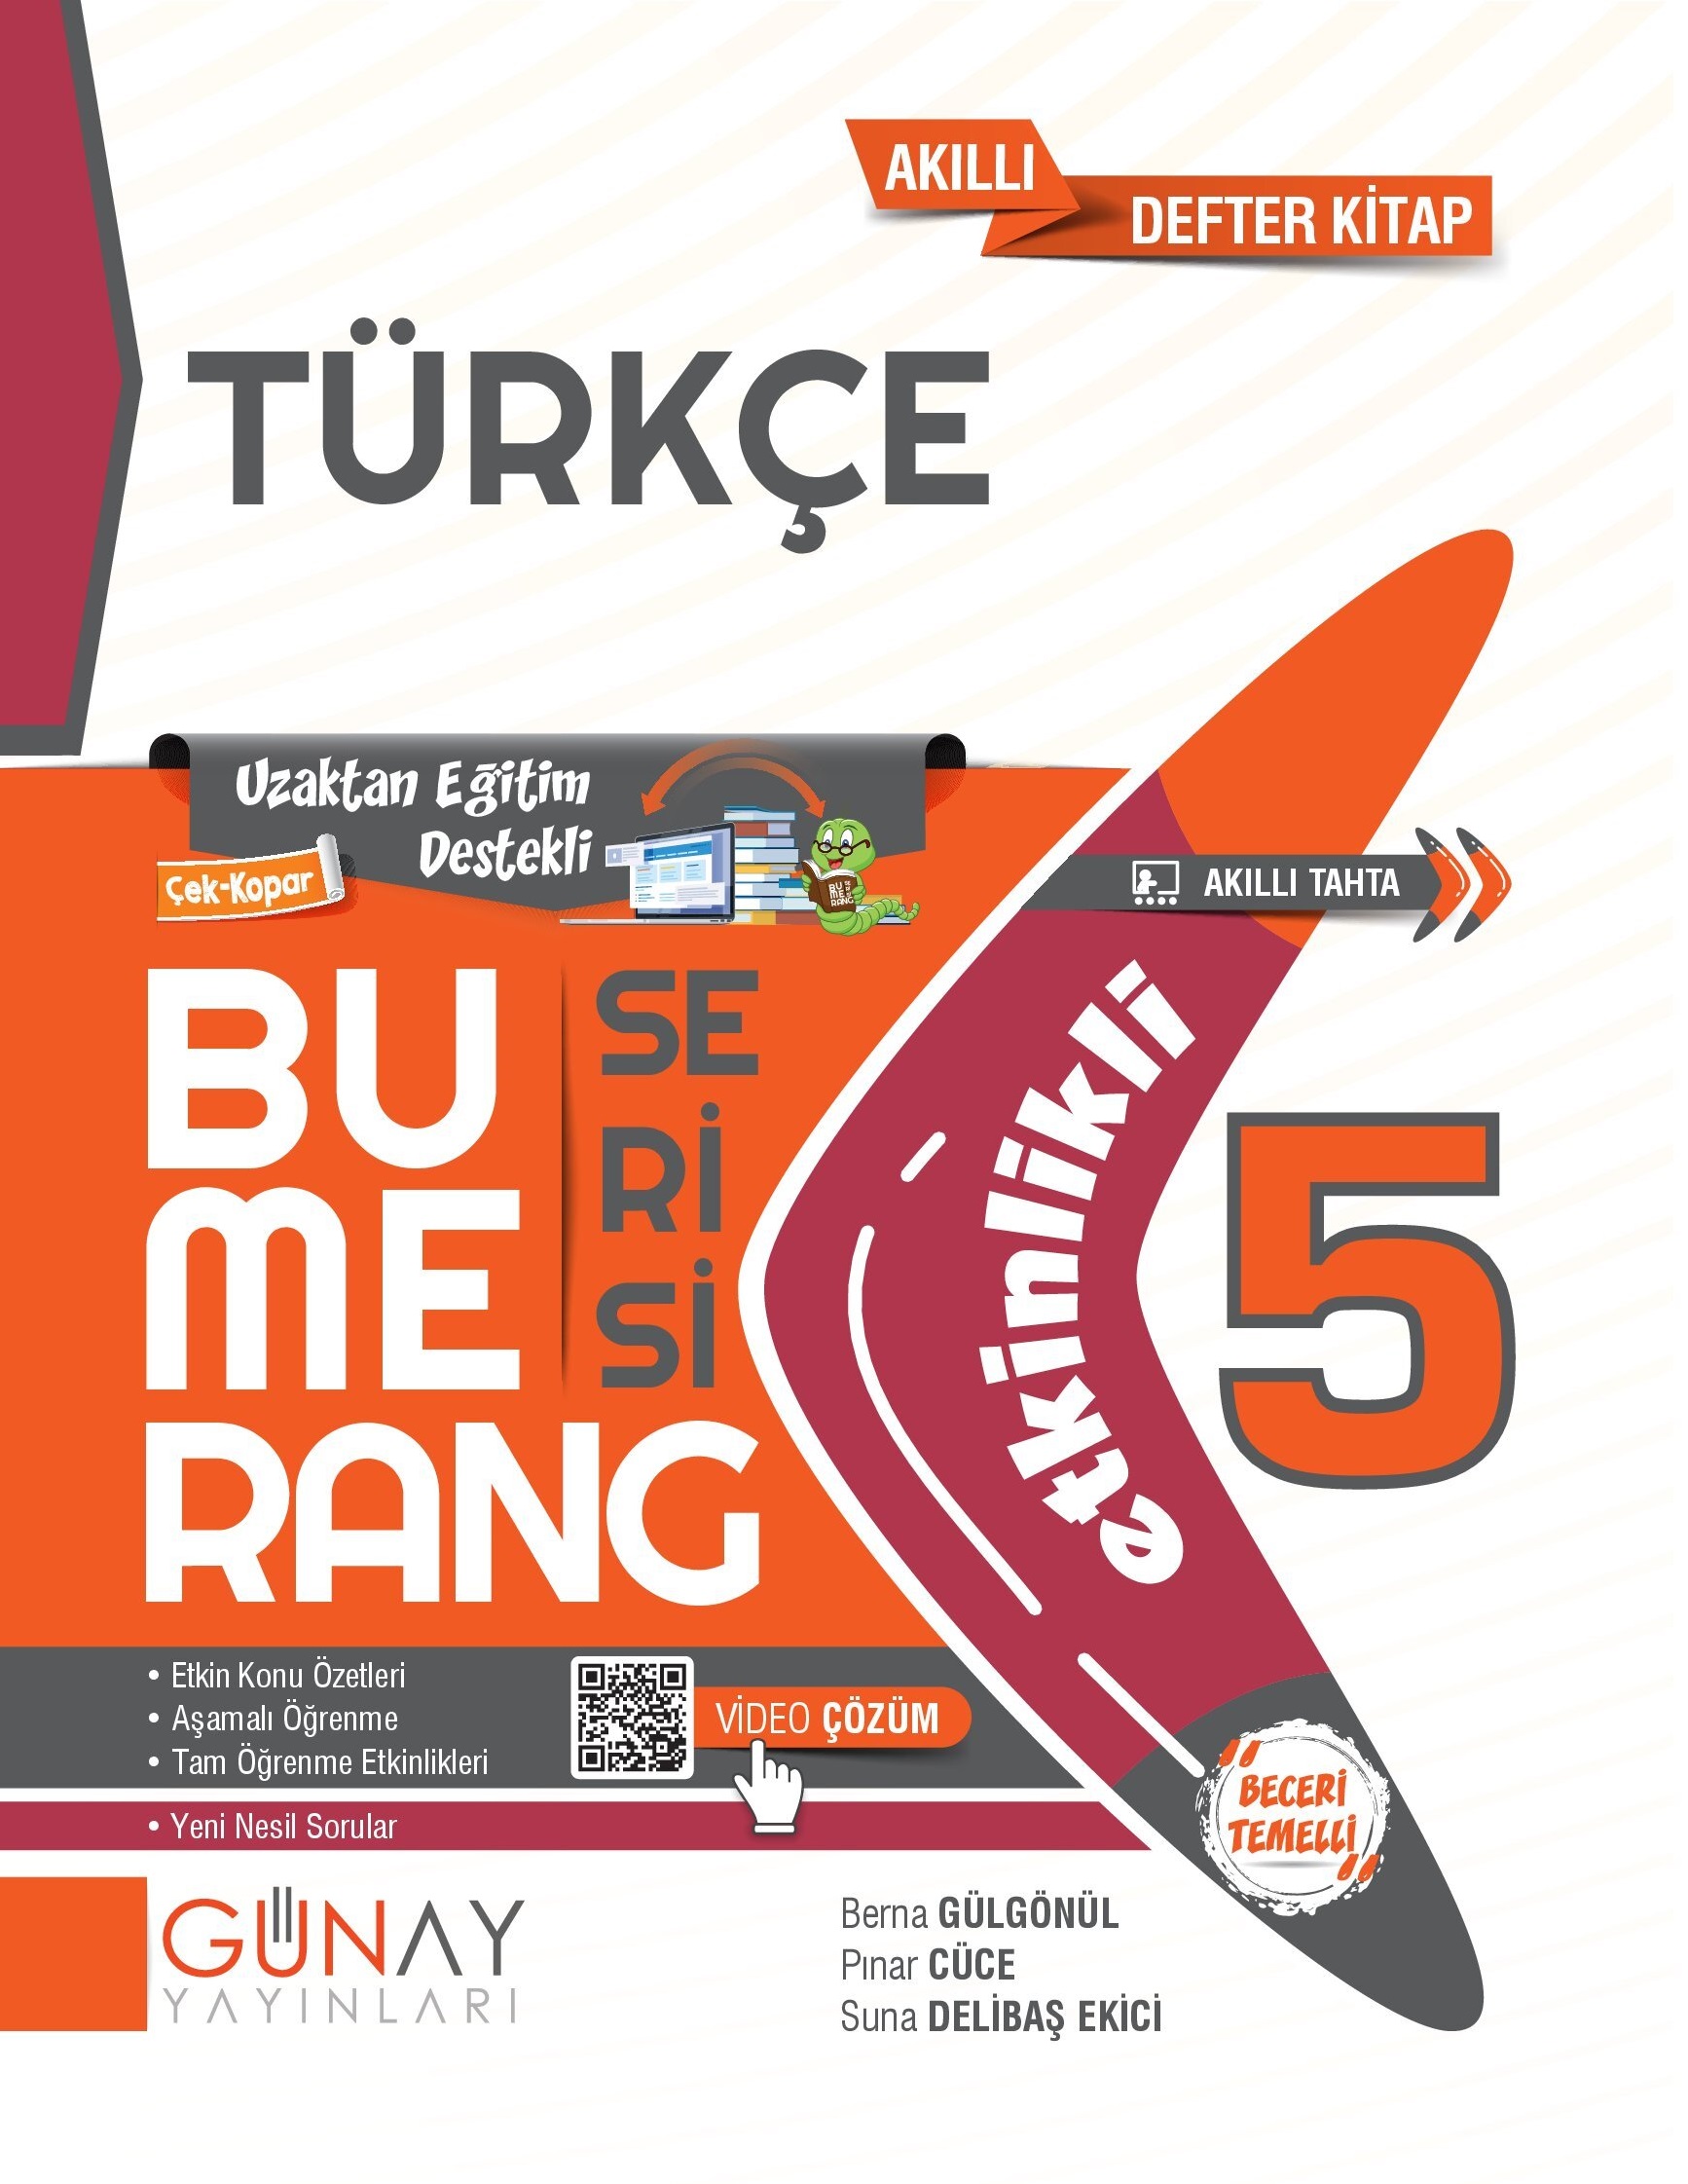 5 bumerang turkce